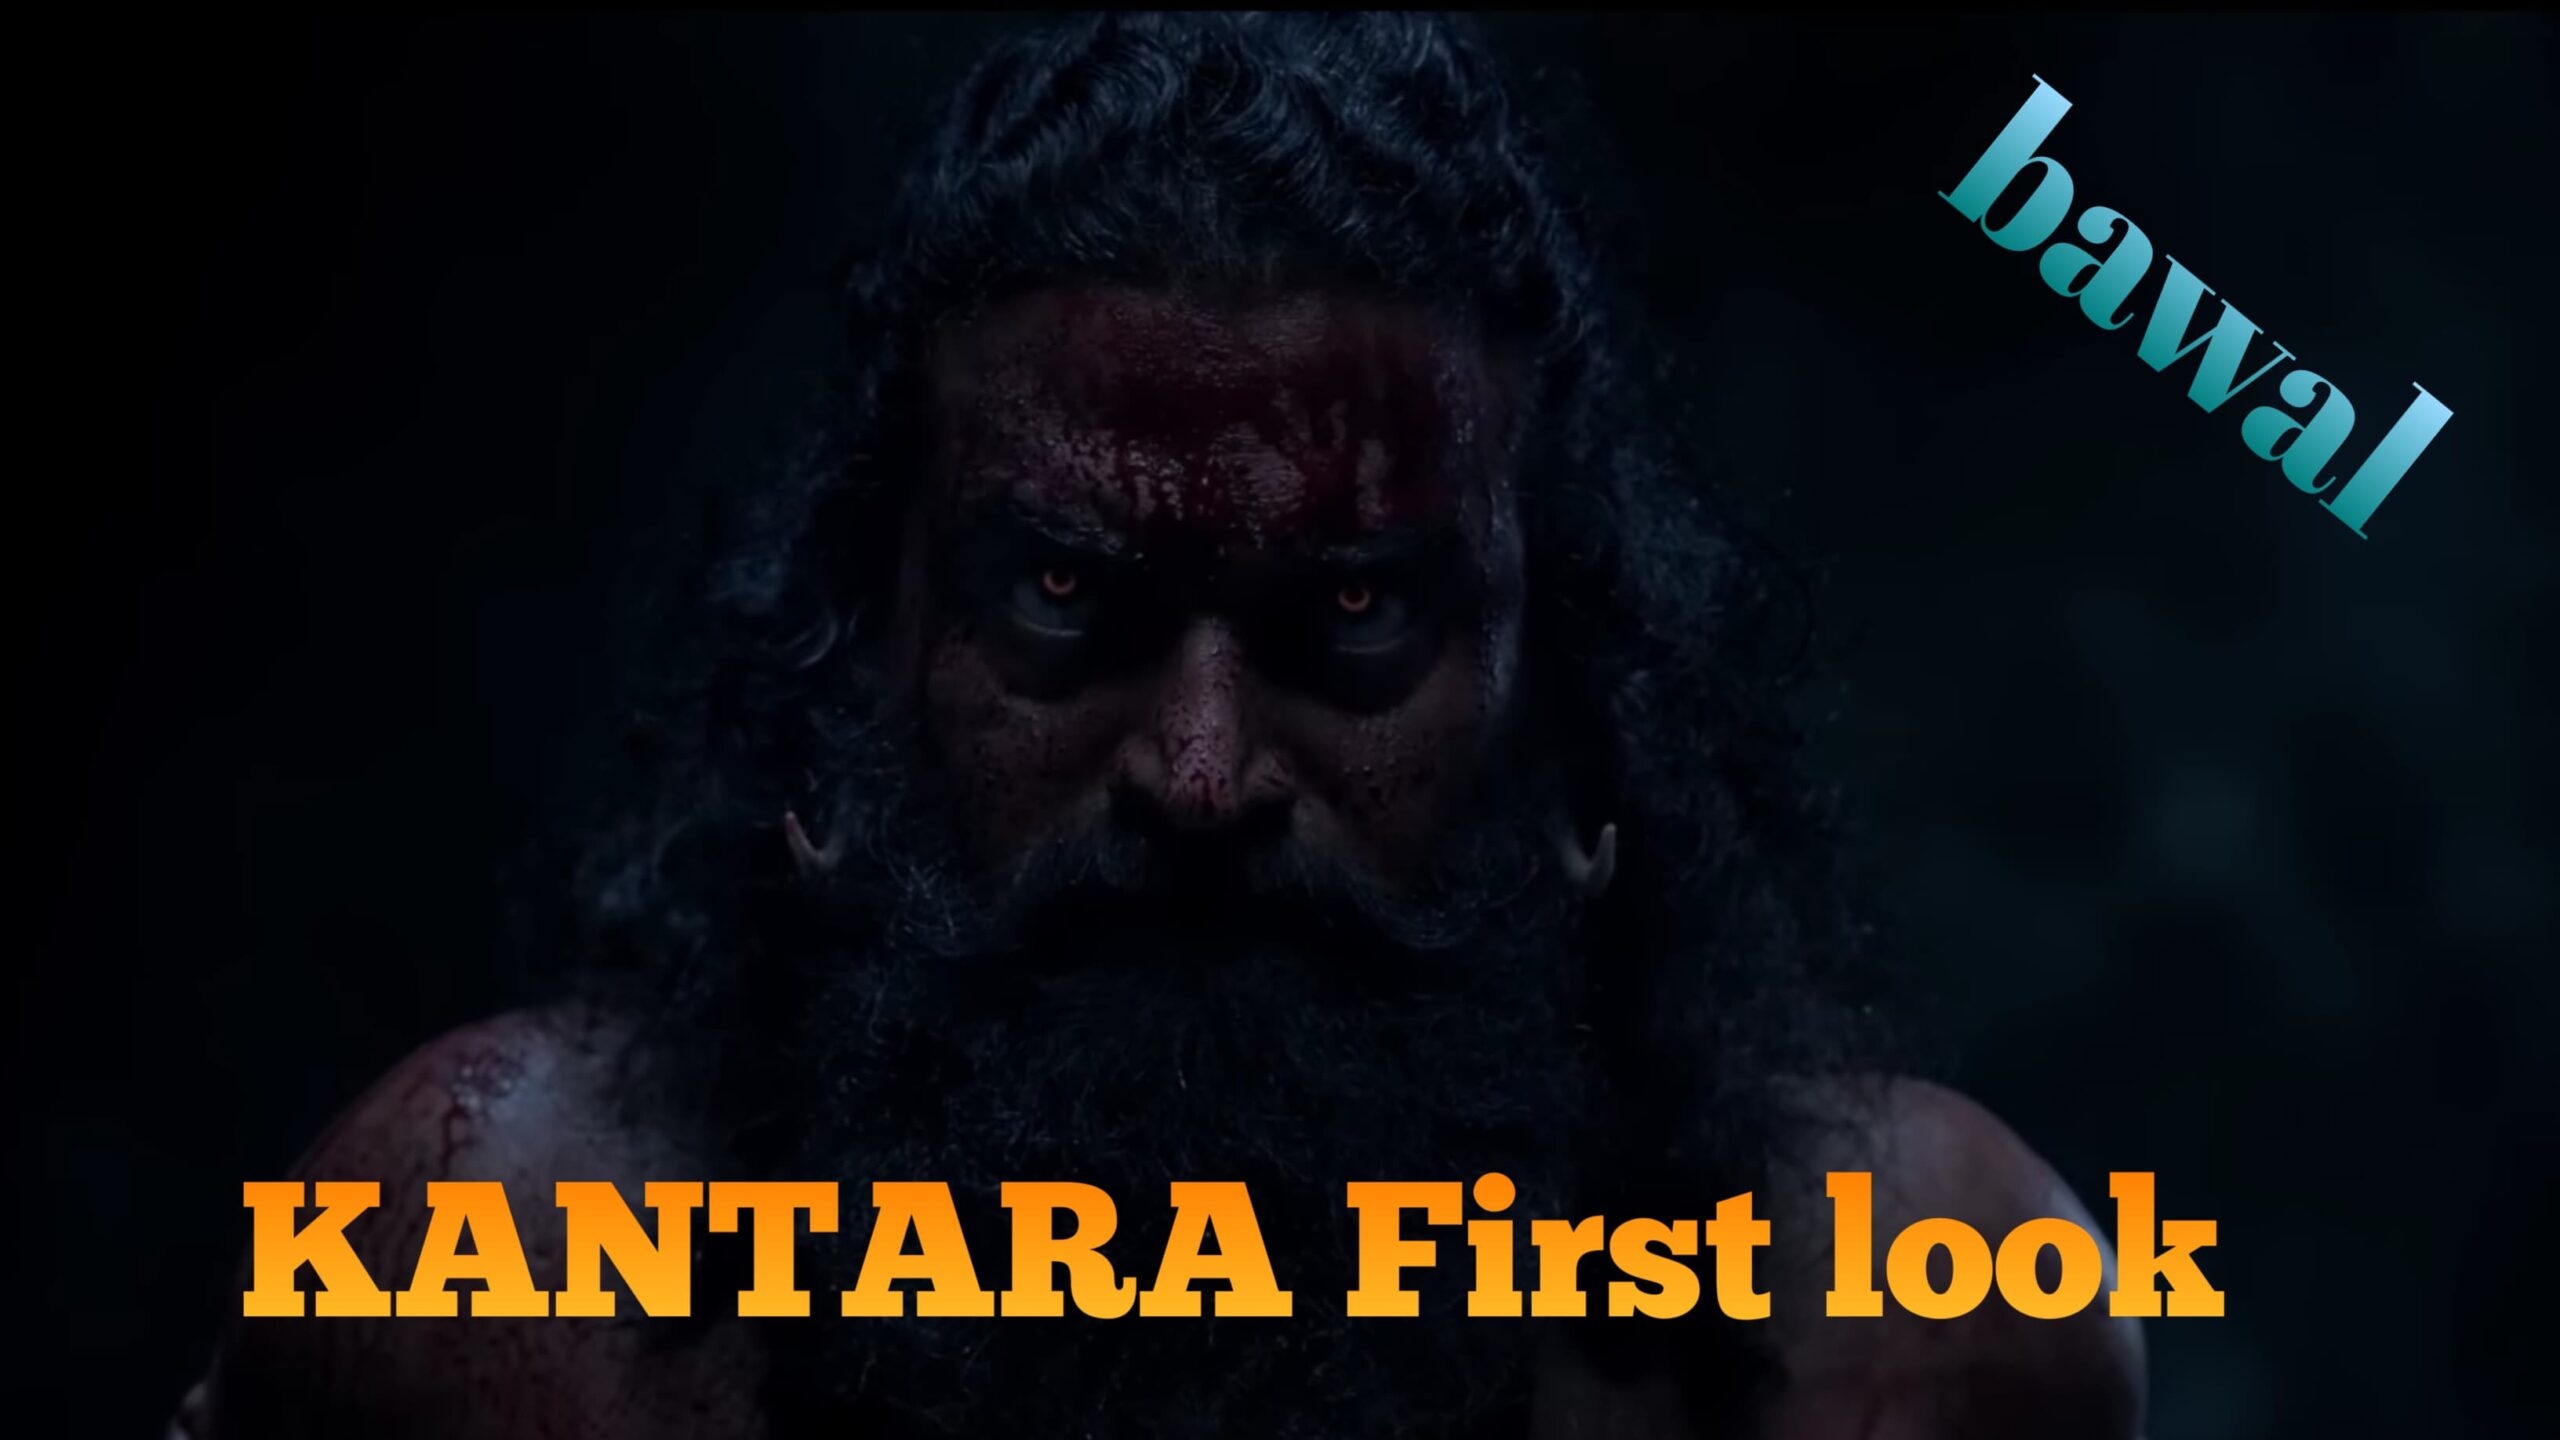 Kantara2 First Look Teaser